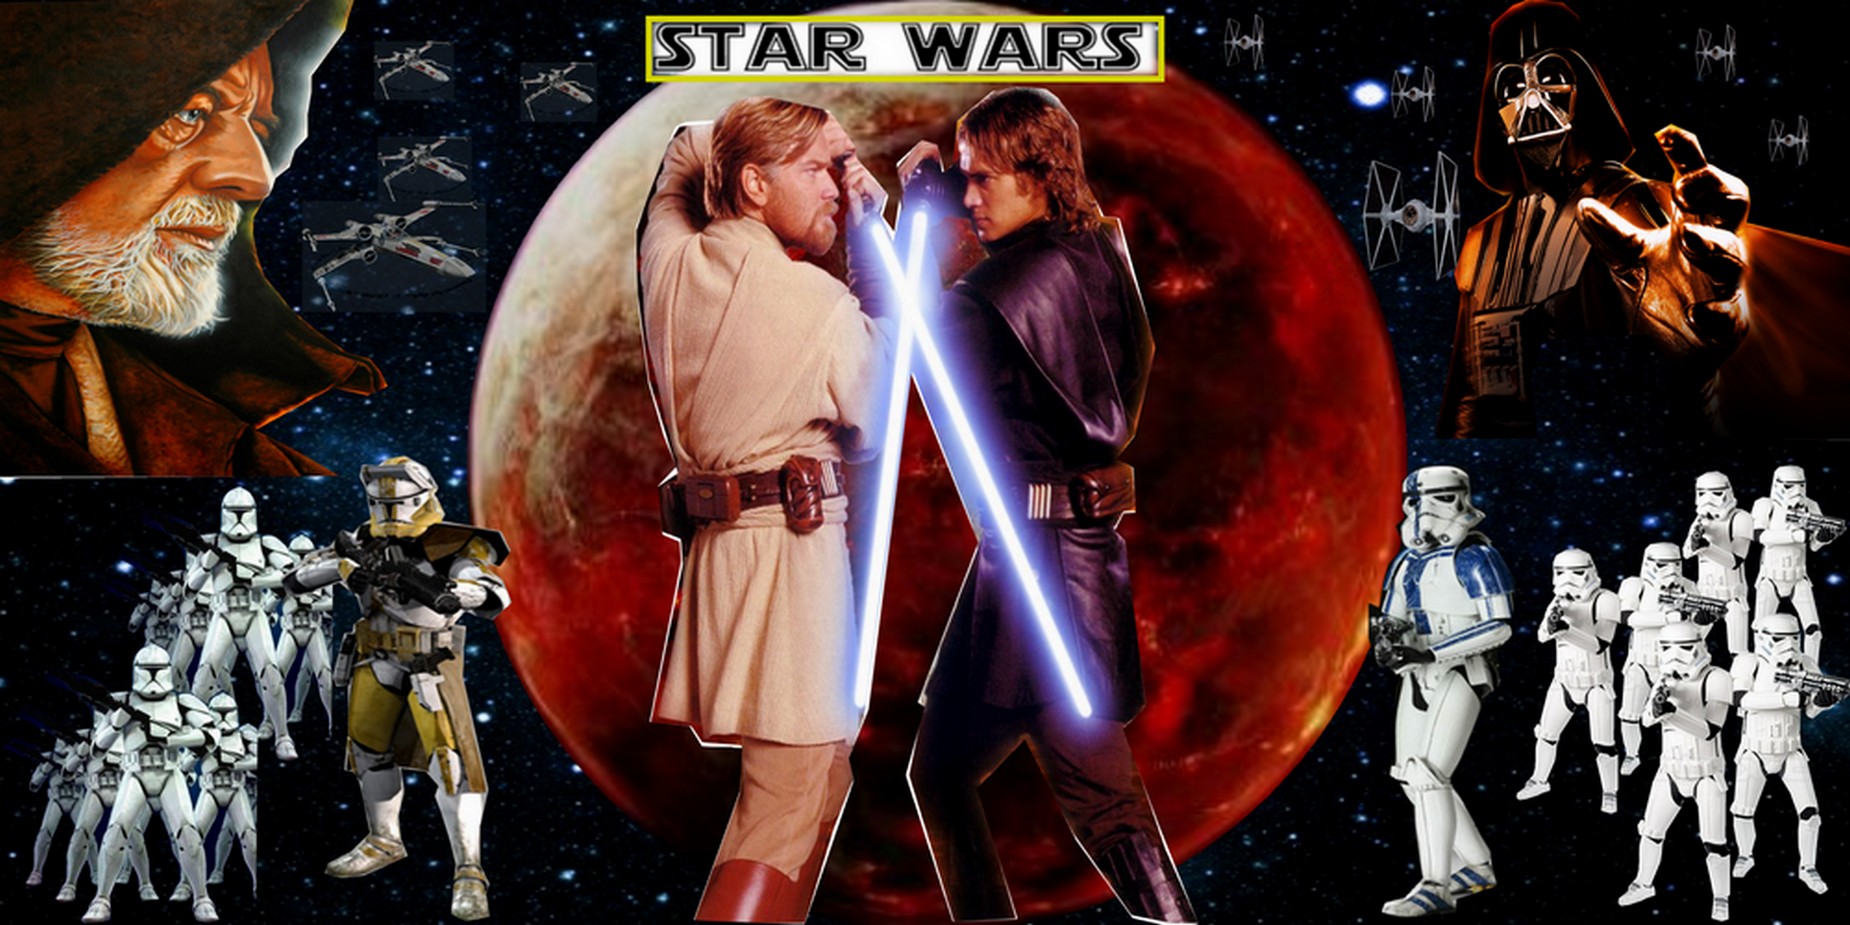 Star Wars Anakin Vs Obi Wan Anakin vs obi wan by darth